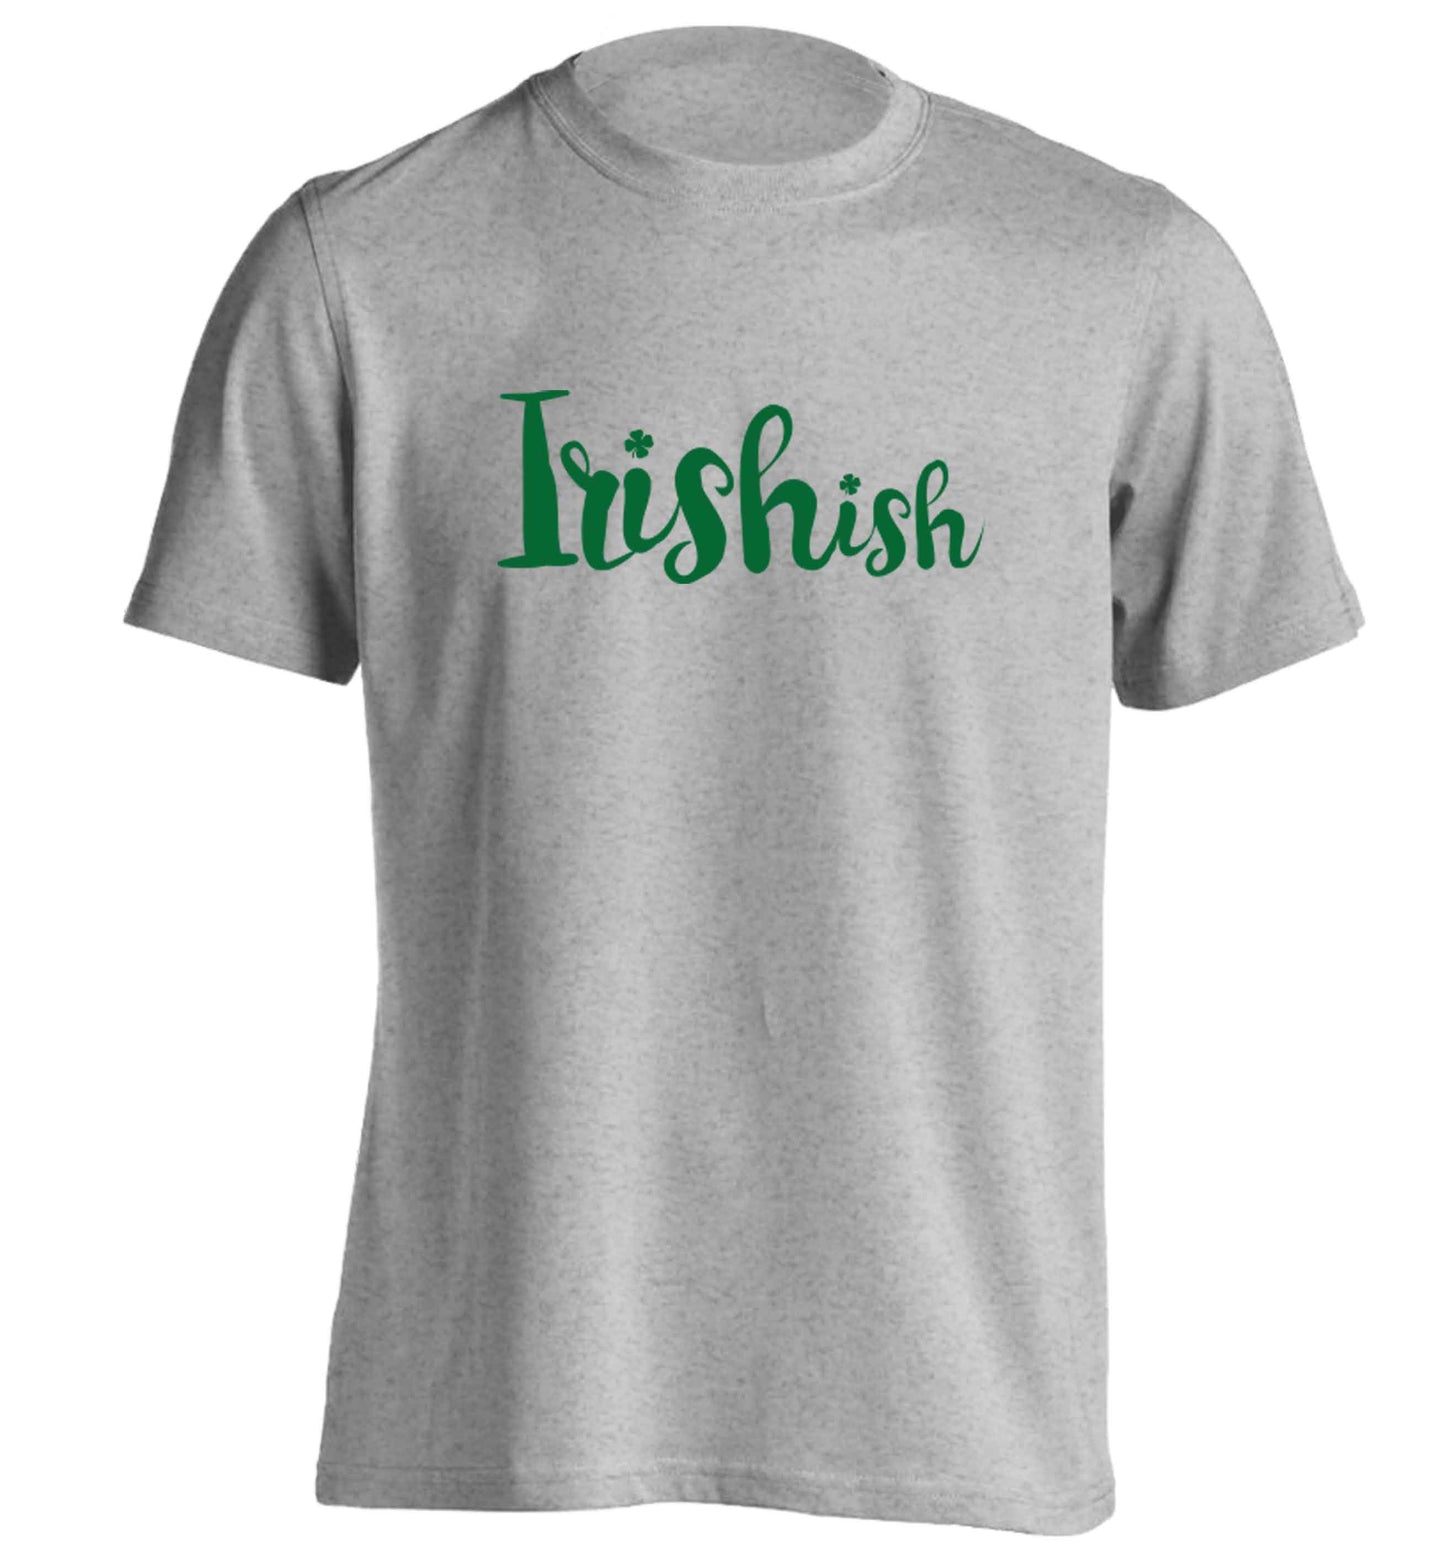 Irishish adults unisex grey Tshirt 2XL